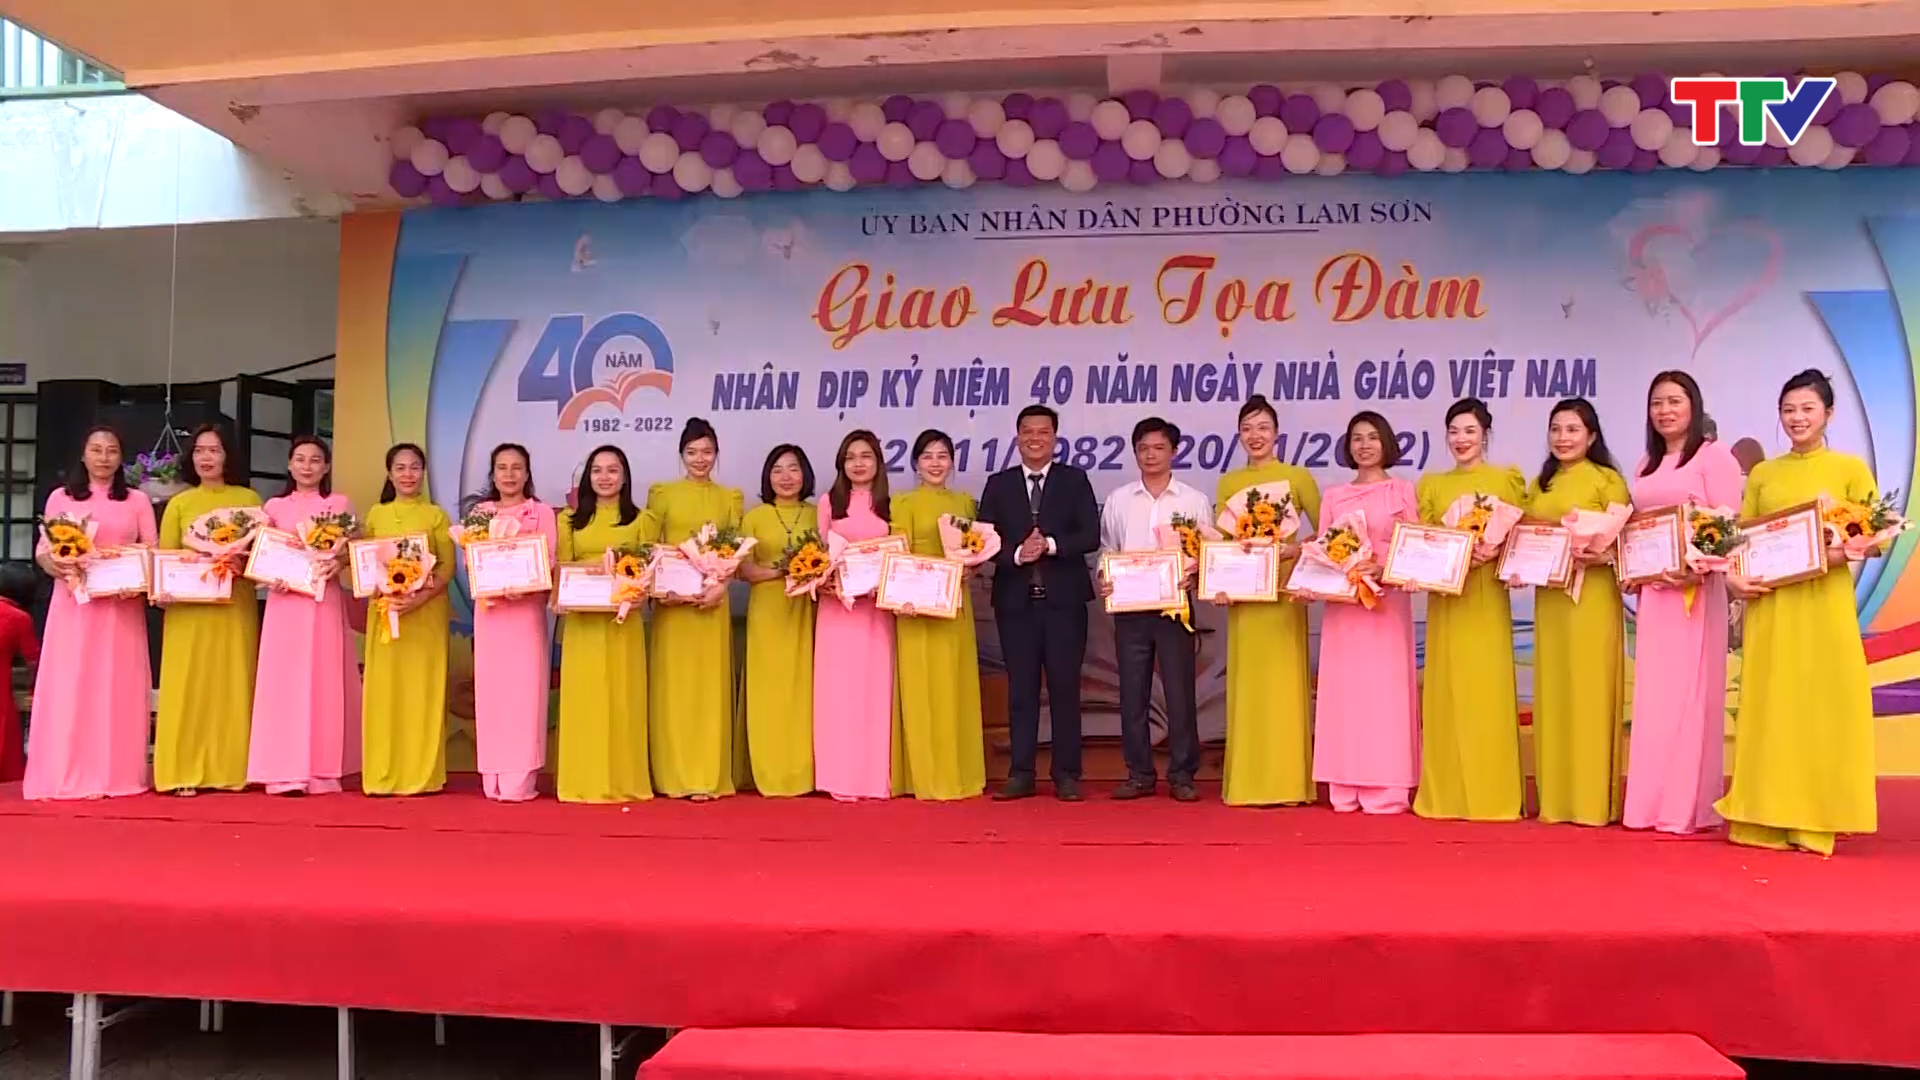 UBND Phường Lam Sơn, thành phố Thanh Hoá kỉ niệm 40 năm ngày Nhà giáo Việt Nam 20/11 - Ảnh 2.